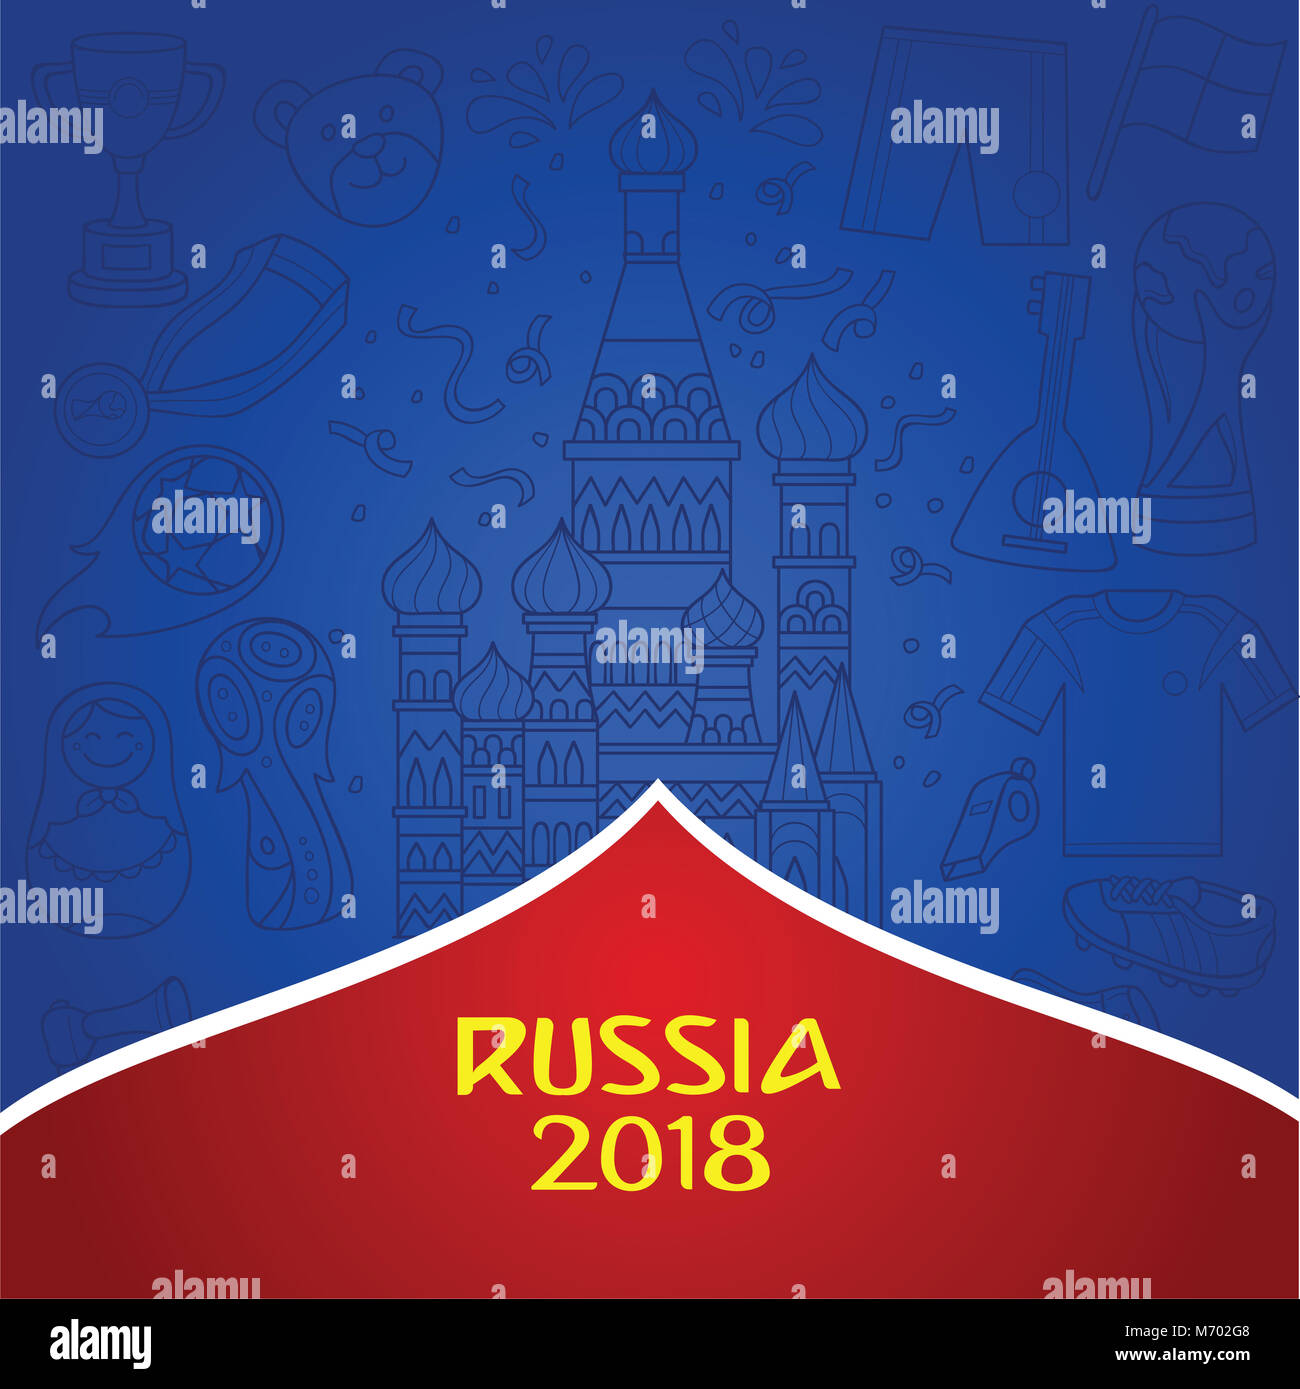 Russische 2018 Wm Hintergrund mit dominanten Farbe blau. Doddle Abbildung der russischen Objekt und Kultur als Hintergrund. Stockfoto